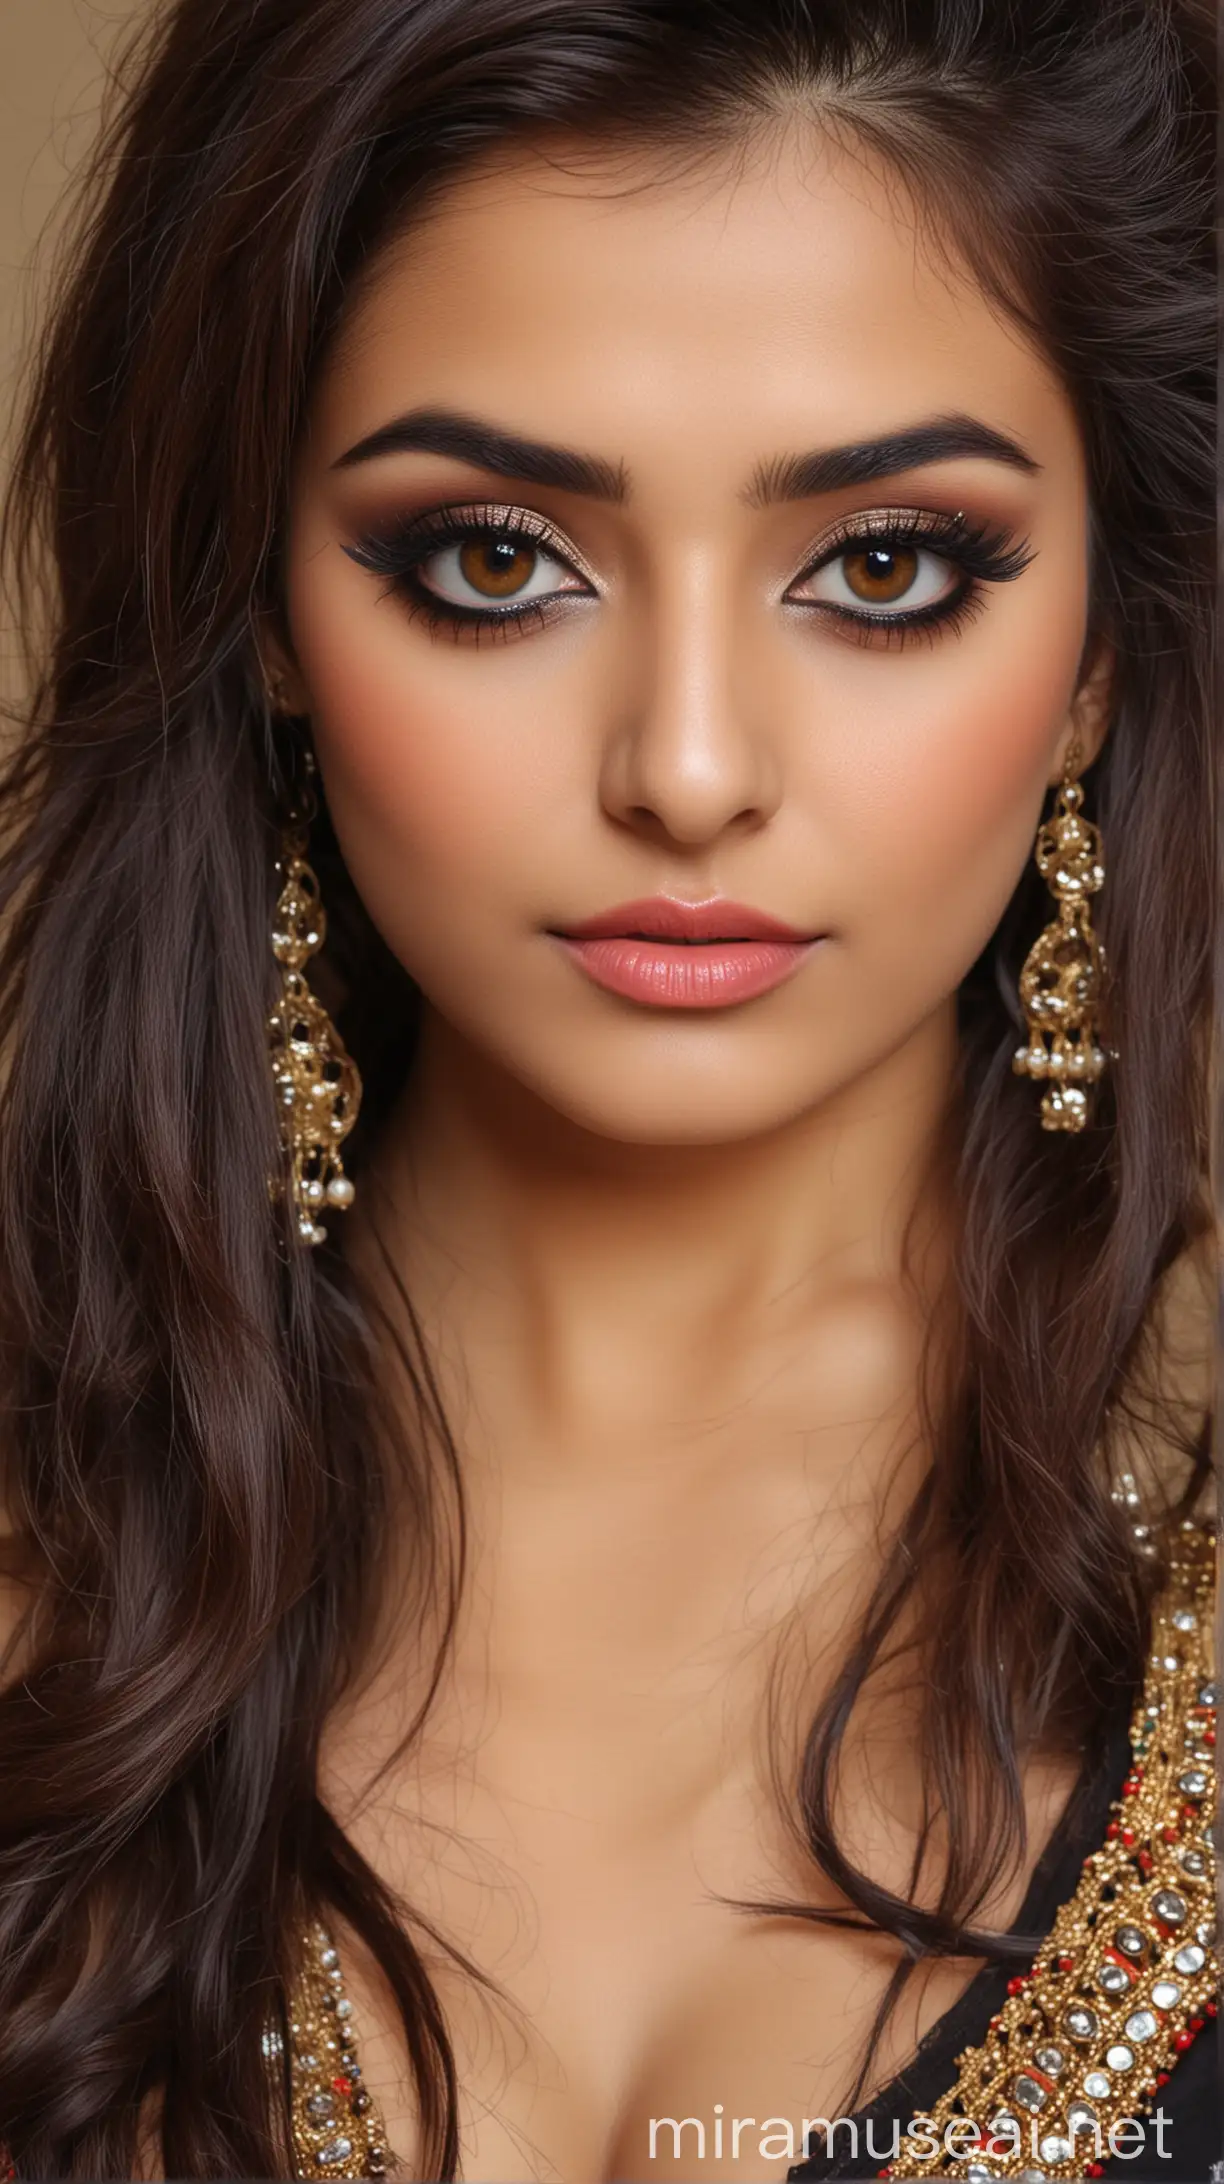 Beautiful Pakistani Women Indian Makeup and Hairstyle Half Body Photo